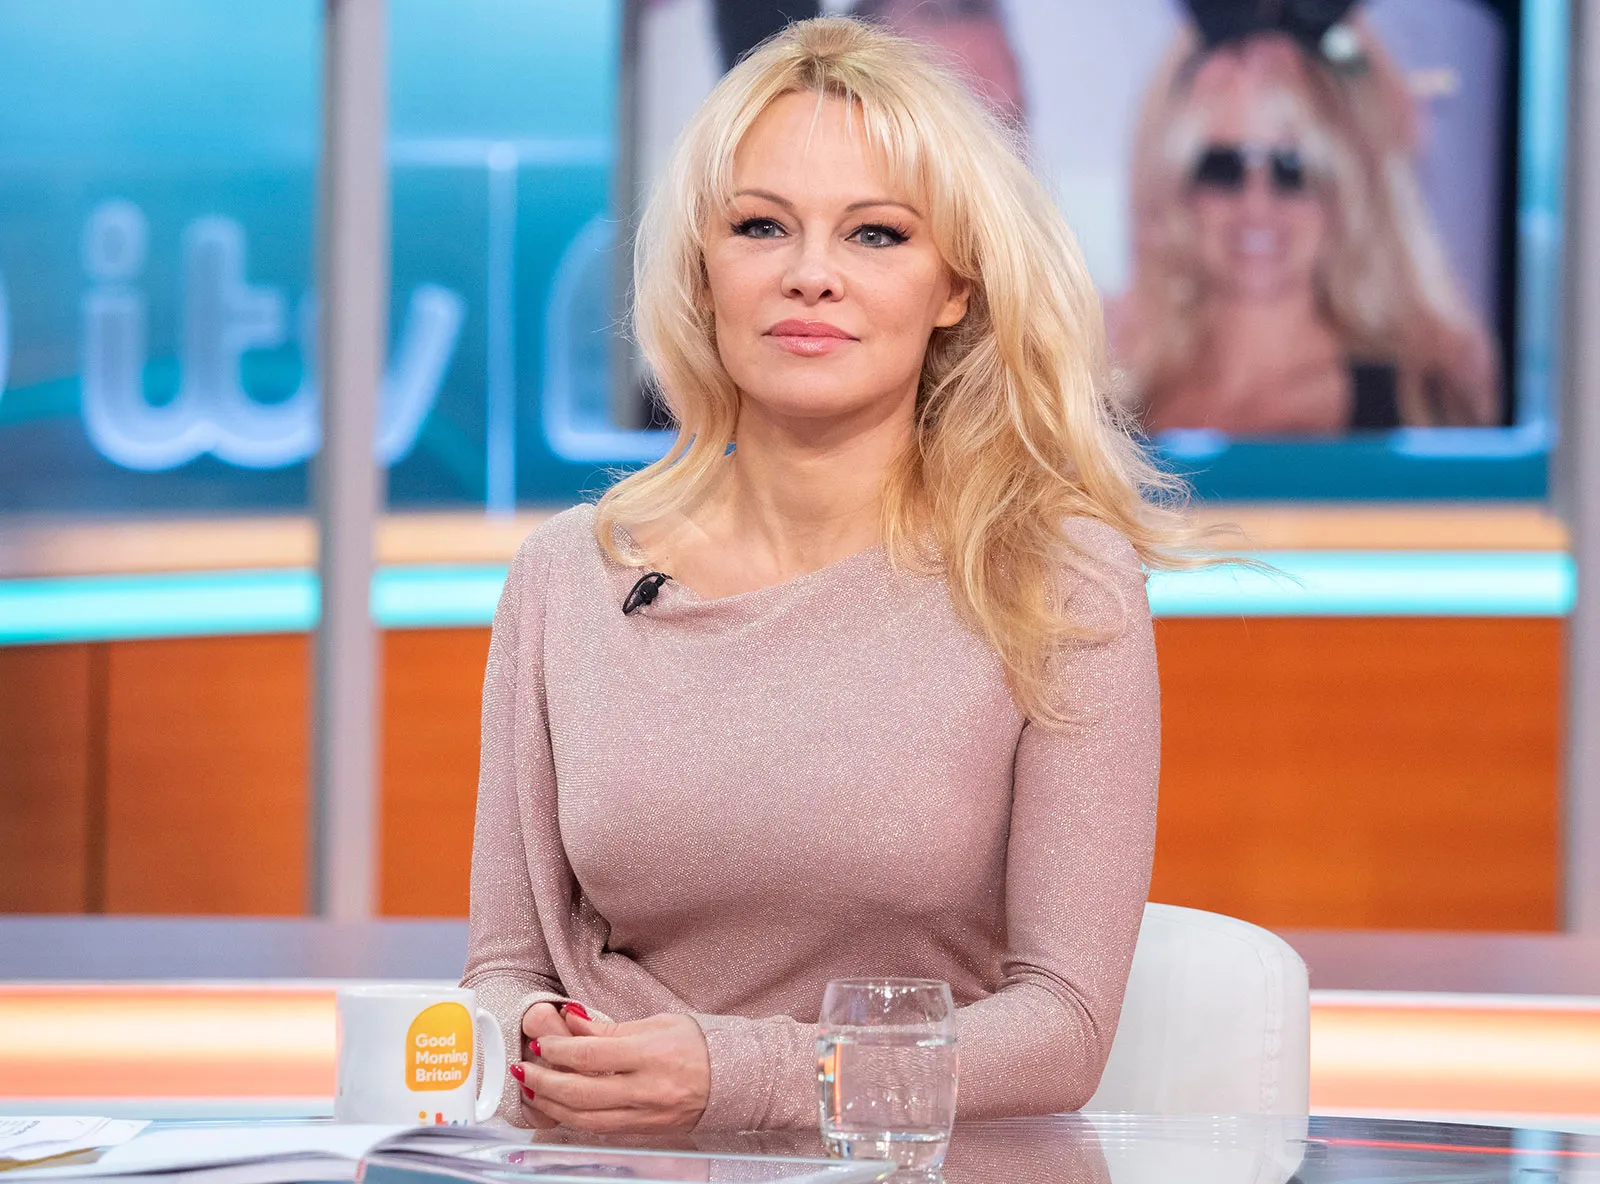 Después de “Pam & Tommy”, Pamela Anderson cuenta su verdad en un libro inédito